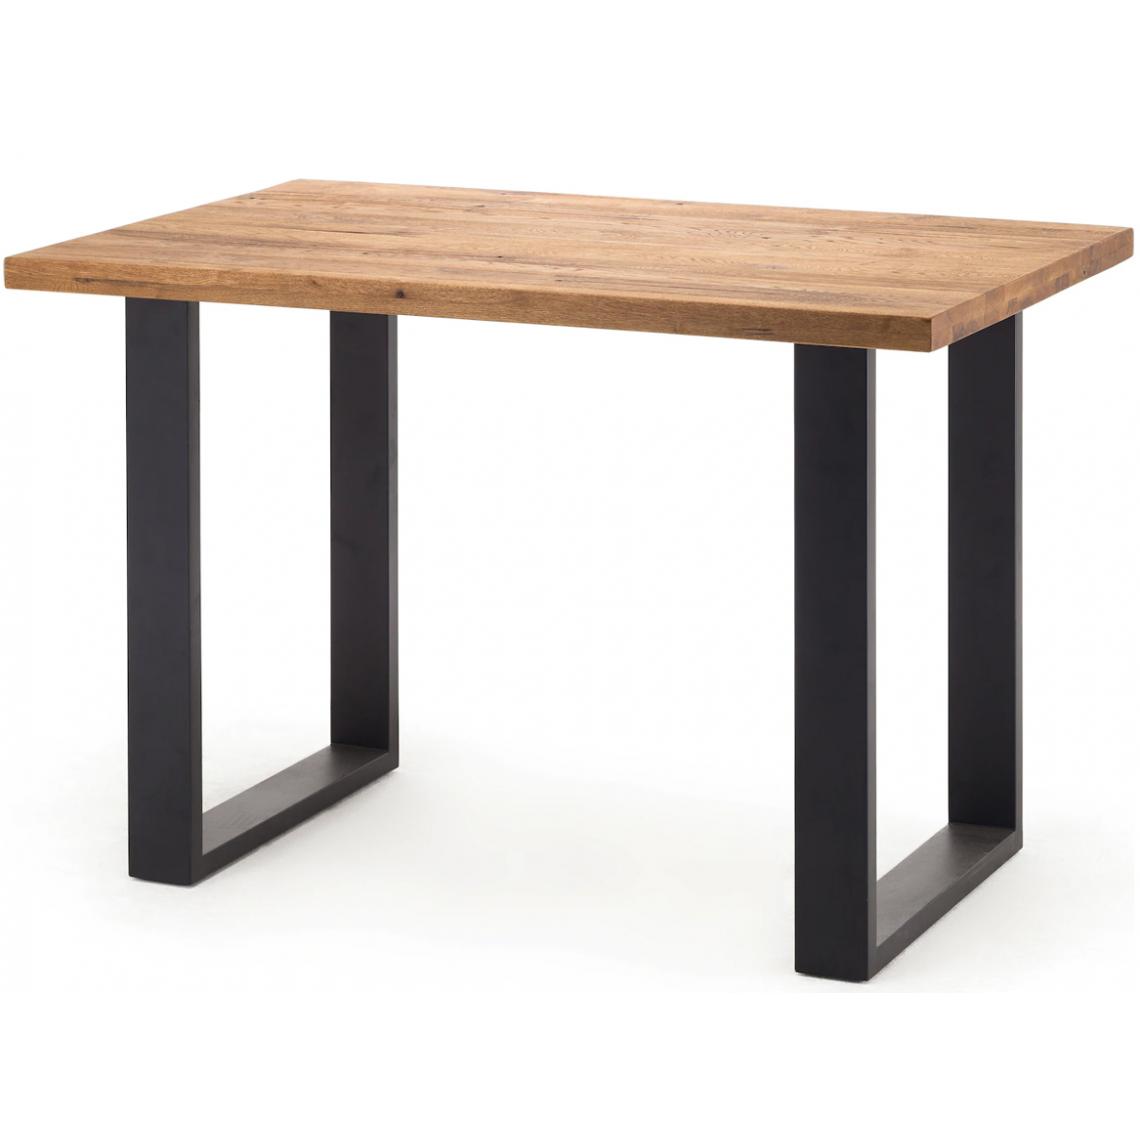 Pegane - Table haute en chêne sauvage et métal laqué anthracite - Longueur 160 x Hauteur 107 x Profondeur 100 cm - Tables à manger